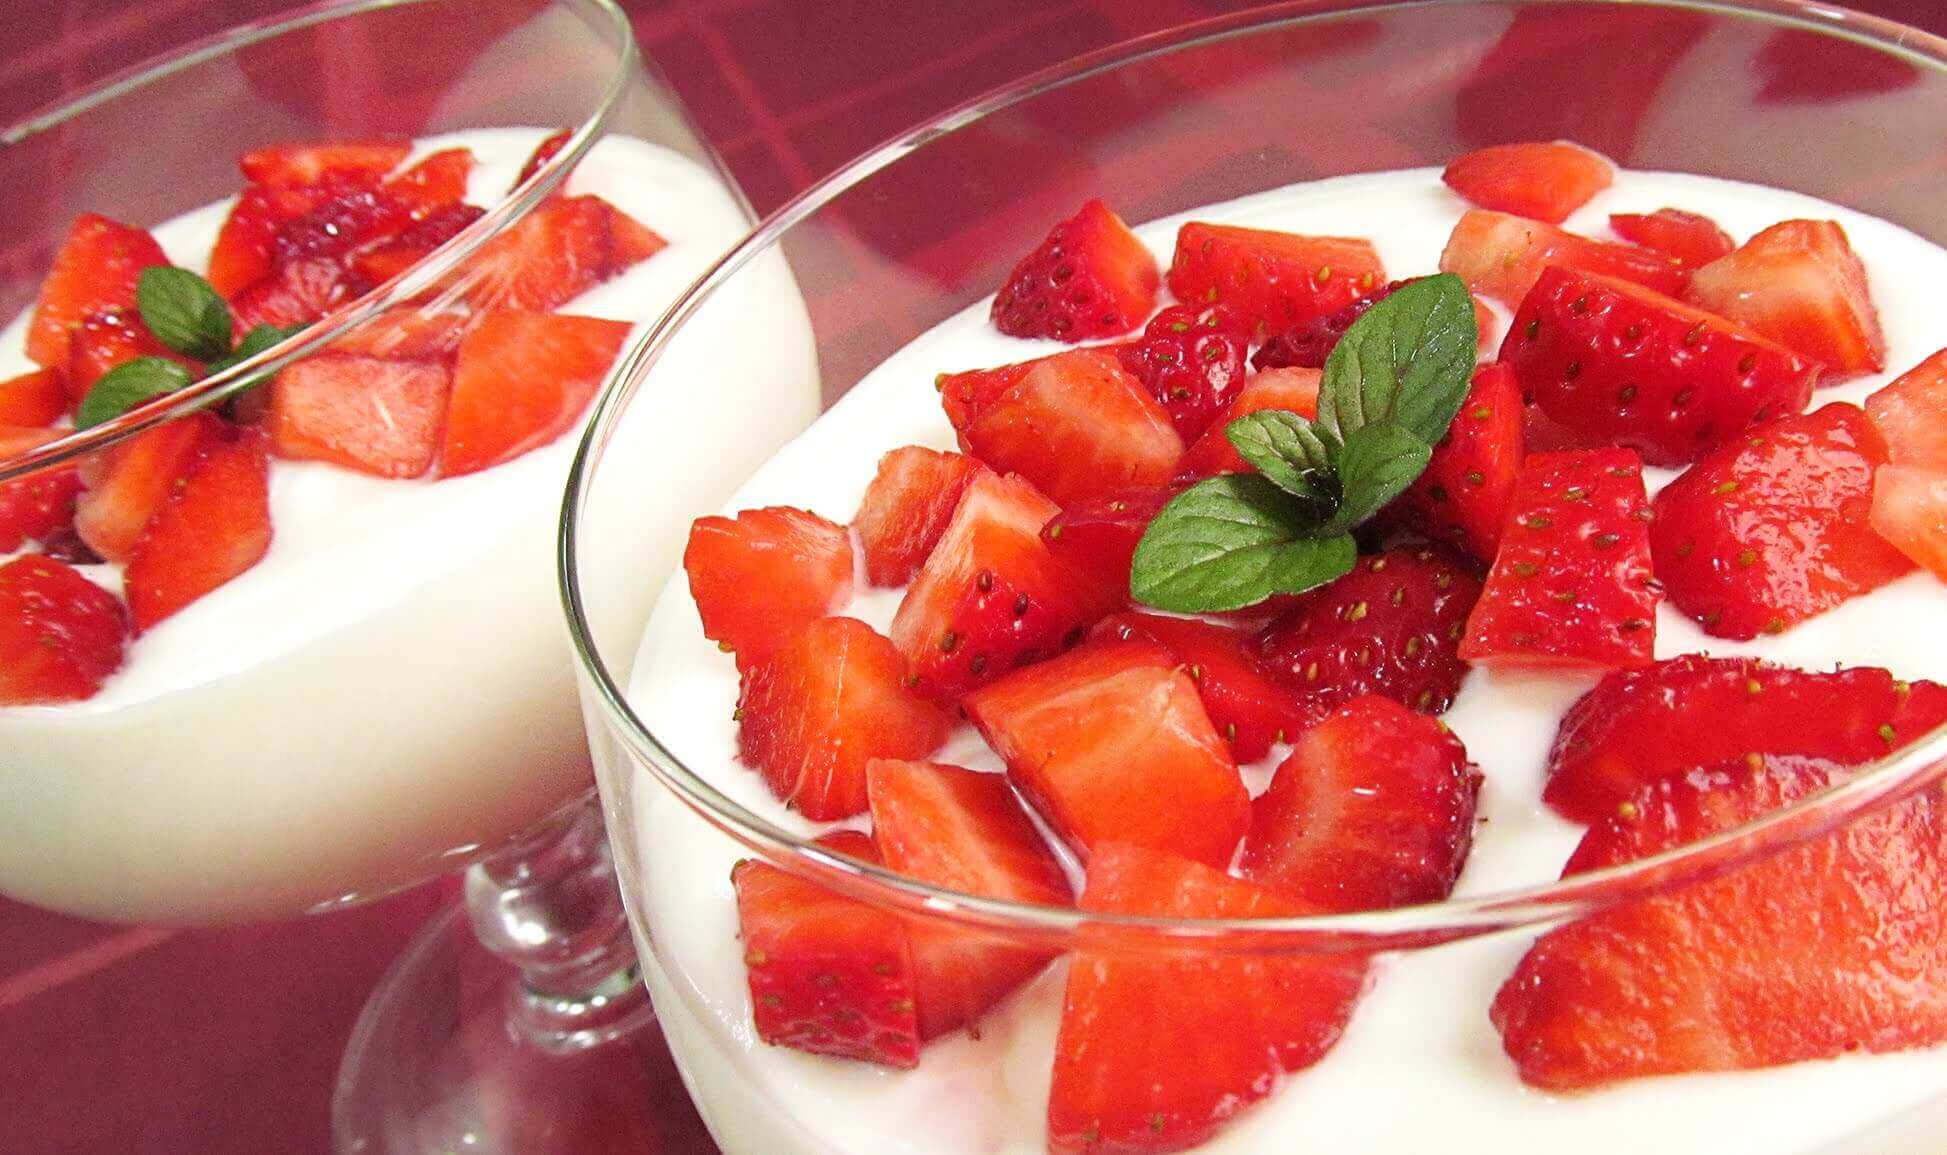 Voit auttaa ihoa kiinteytymään mansikoiden ja jogurtin avulla.